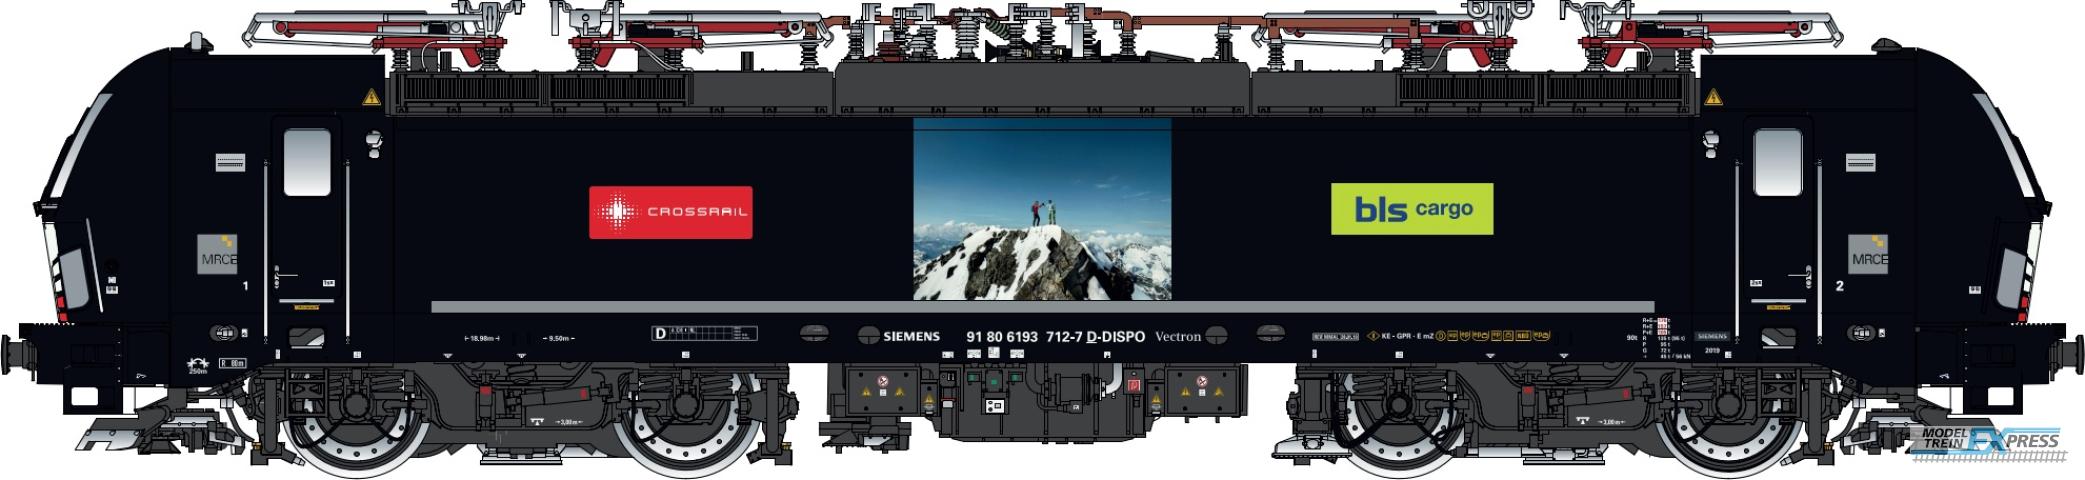 LS Models 17117S BLS Cargo/Crossrail/MRCE Vectron MS, 91 80 6193 712-7 D-DISPO, 4 pantographs  /  Ep. VI  /  ---  /  HO  /  DC SOUND  /  1 P.